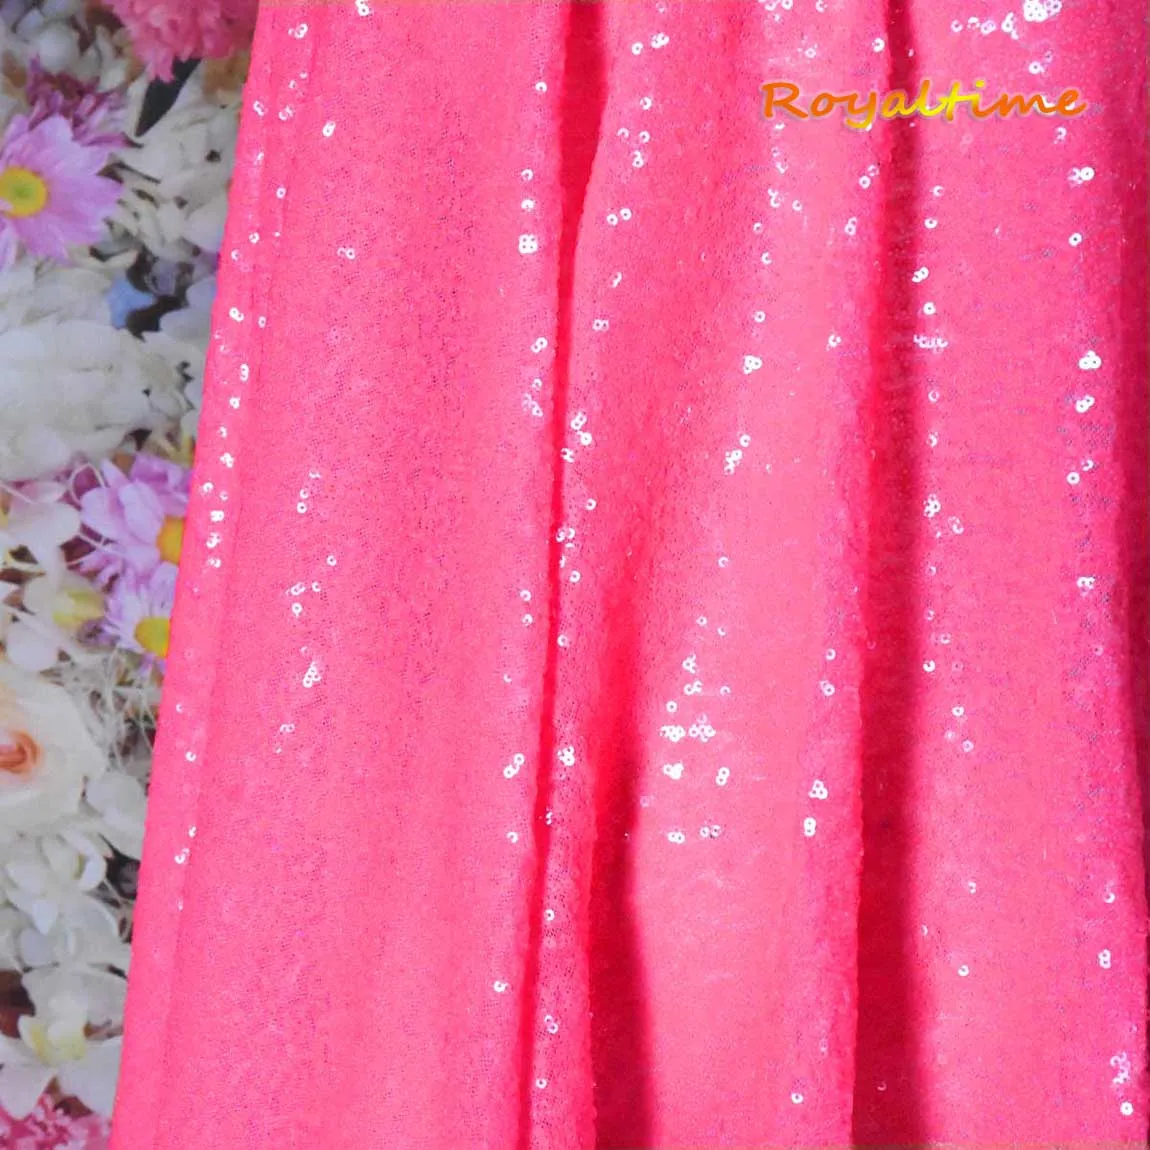 Royaltime-tela de lentejuelas de color rosa neón brillante, tejido de encaje africano de malla bordada bidireccional para costura de vestidos, por yarda